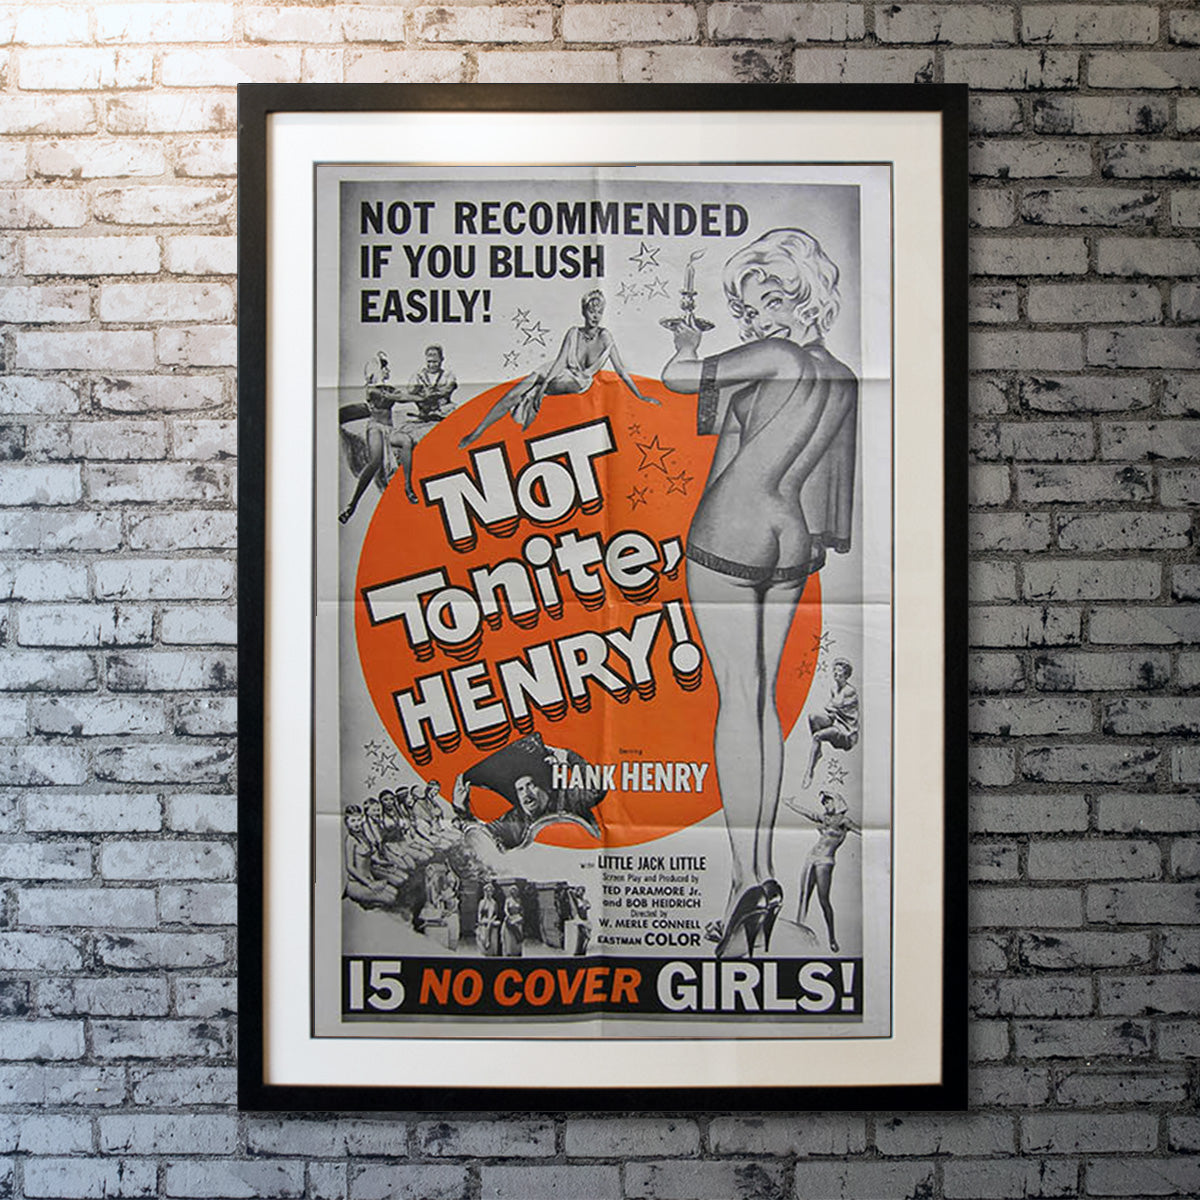 Not Tonite Henry (1960)